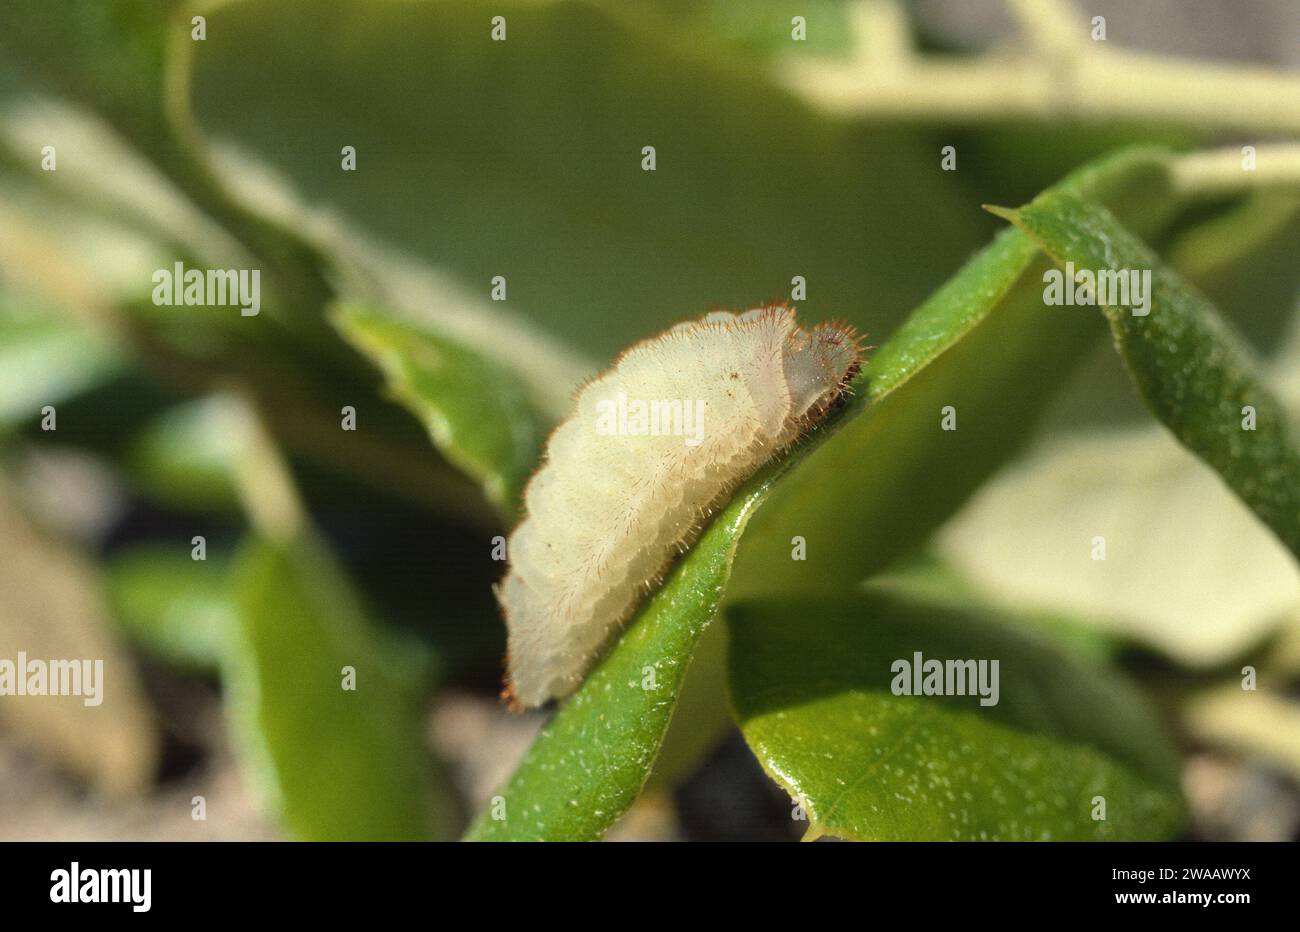 Nordmannia ilicis oder Satyrium ilicis ist ein kleiner Schmetterling aus Westeuropa. Raupe auf einer Futteranlage (Quercus sp.). Stockfoto